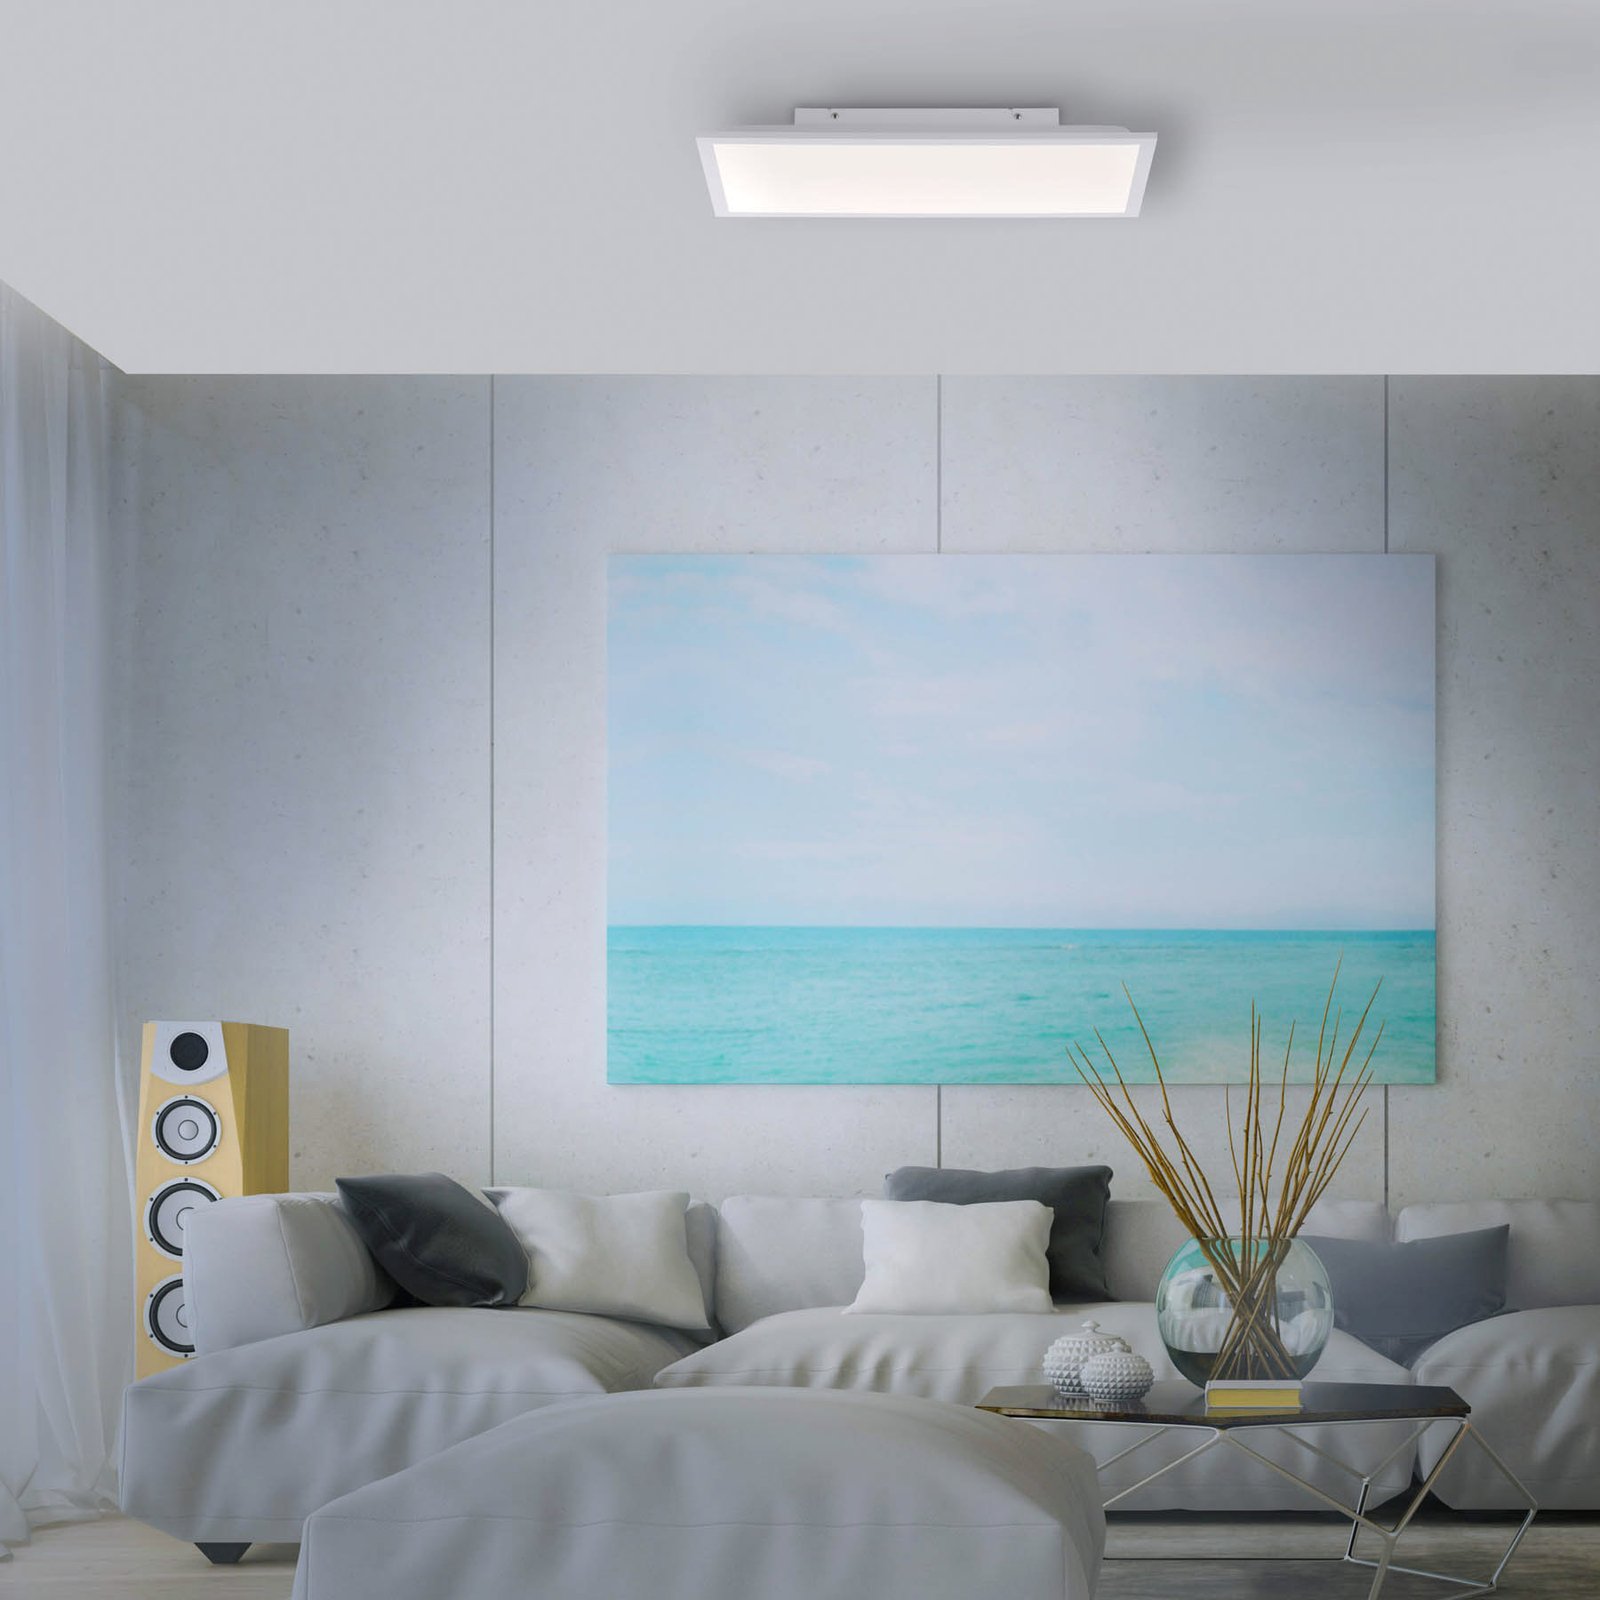 Fleet LED ceiling lamp motion detector 60x30 cm